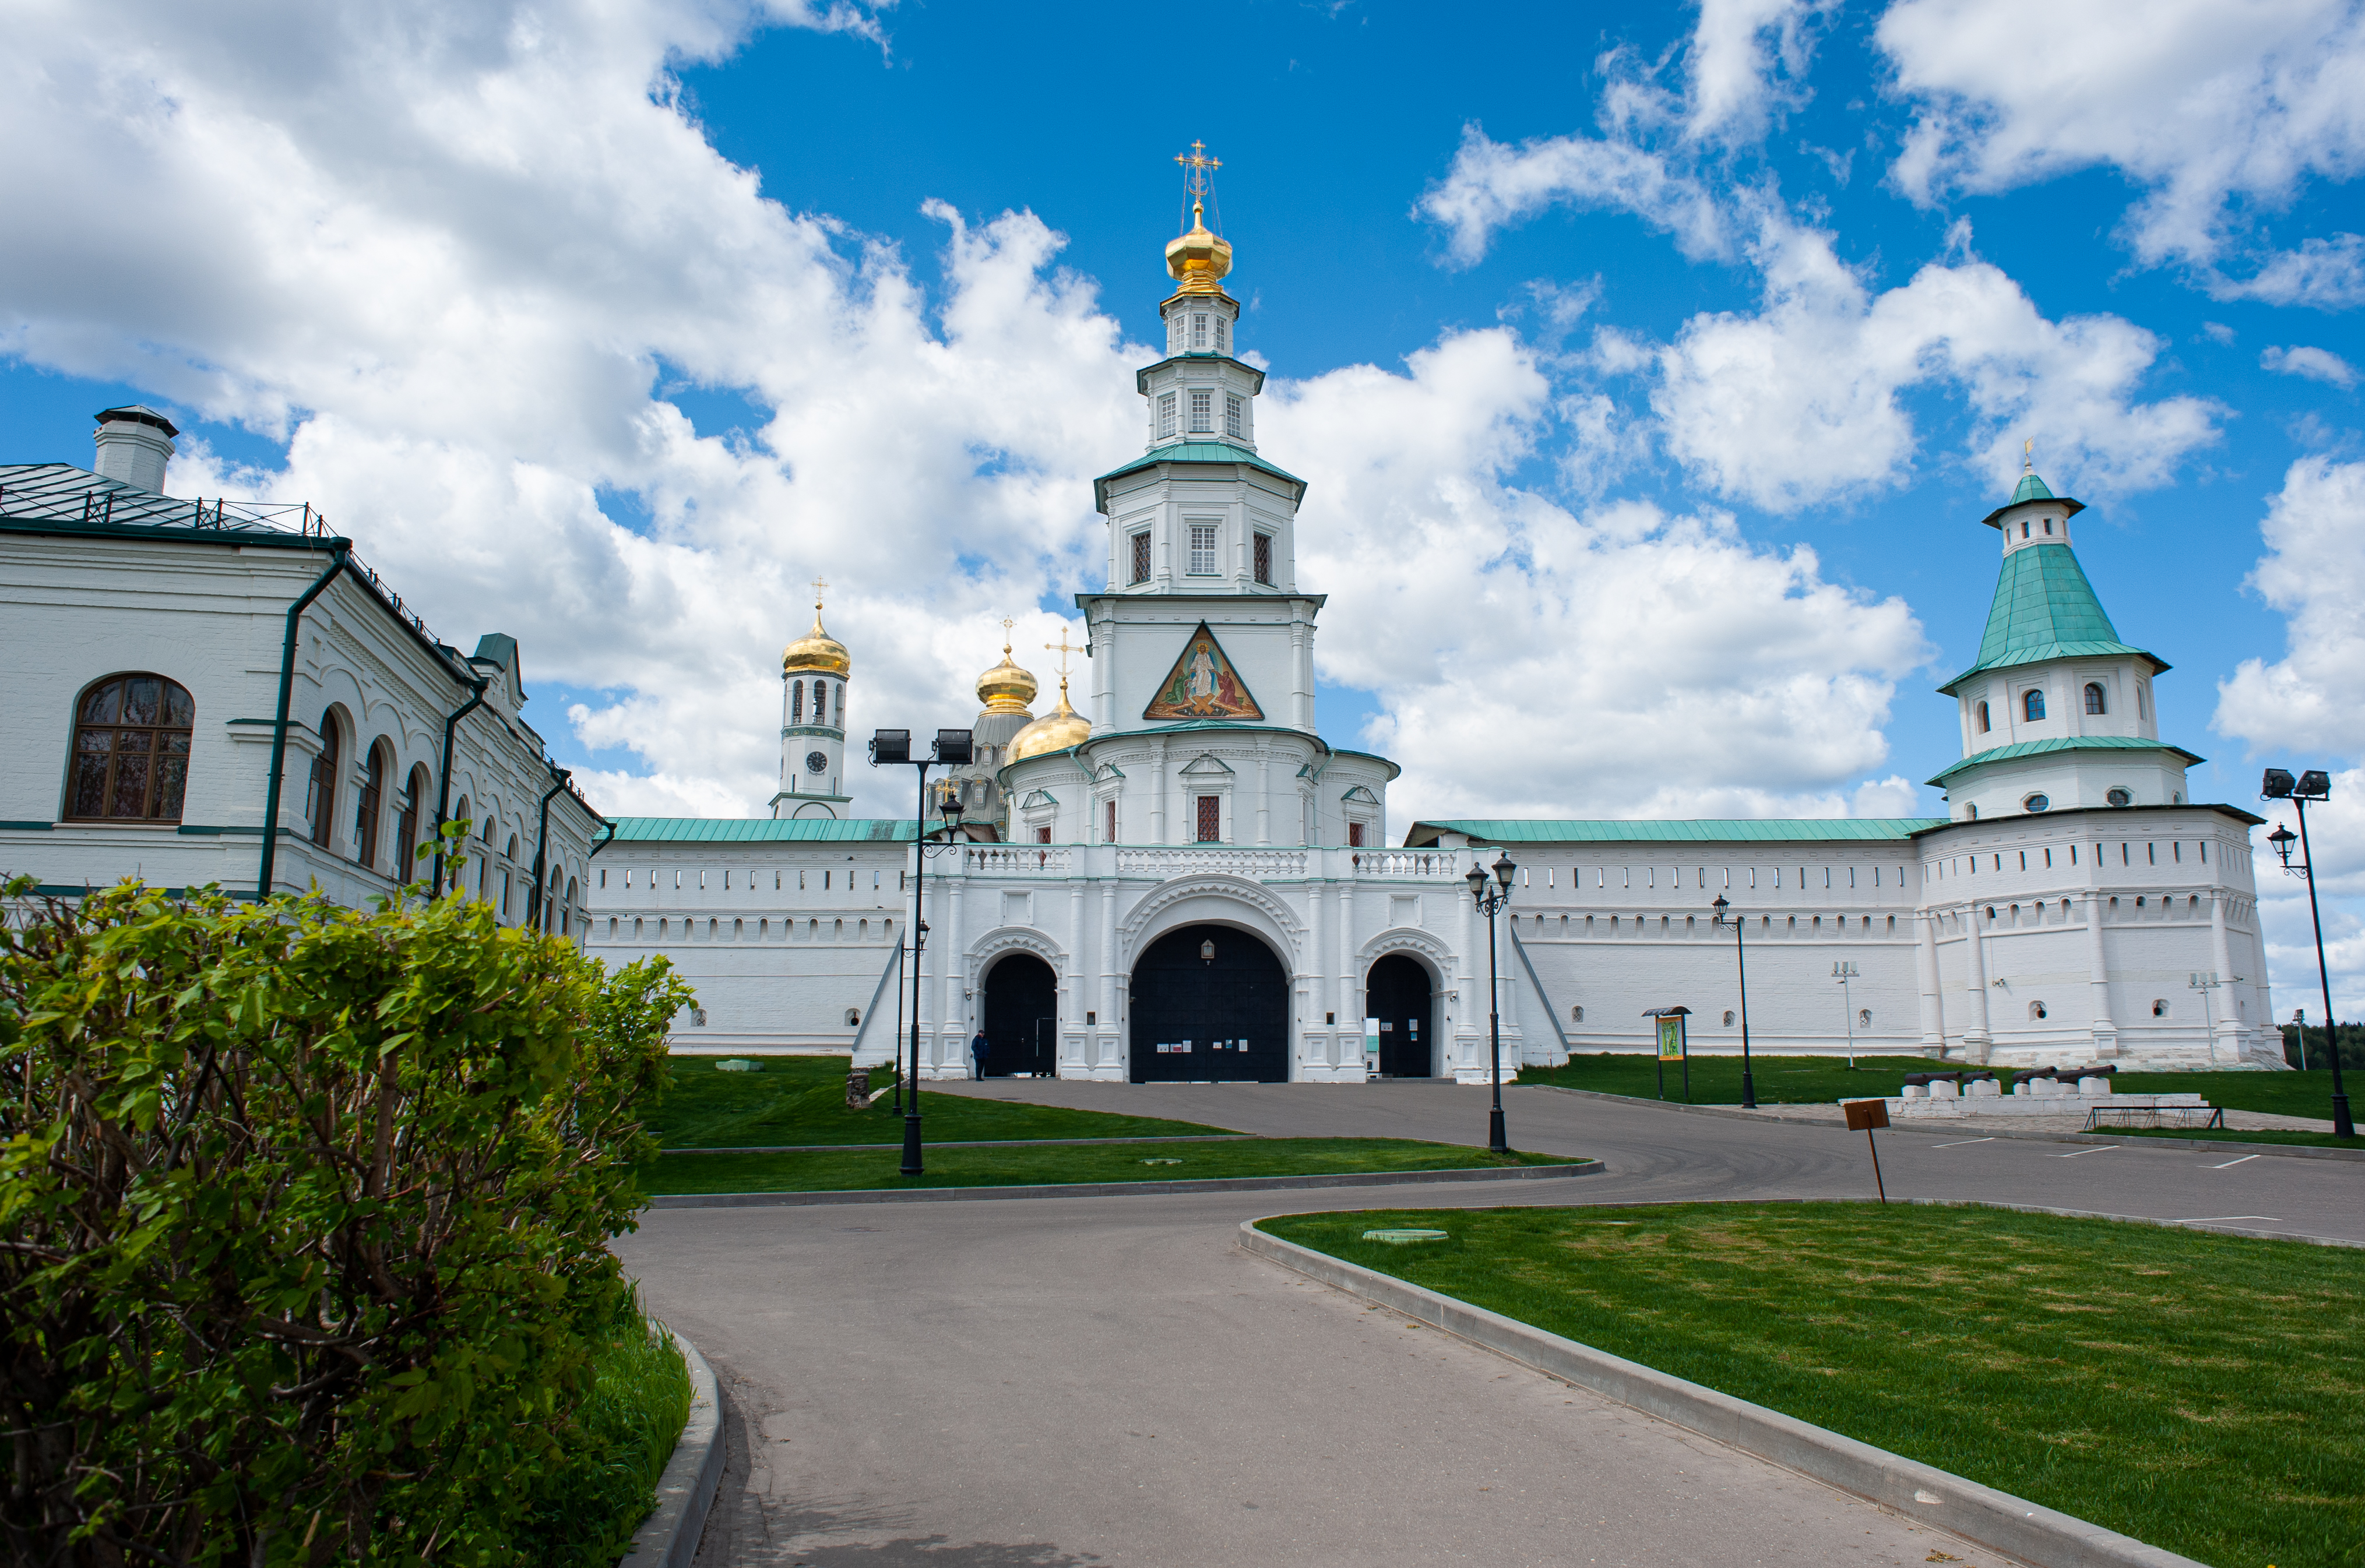 Воскресенский Новоиерусалимский монастырь в 1656 году основал патриарх Никон